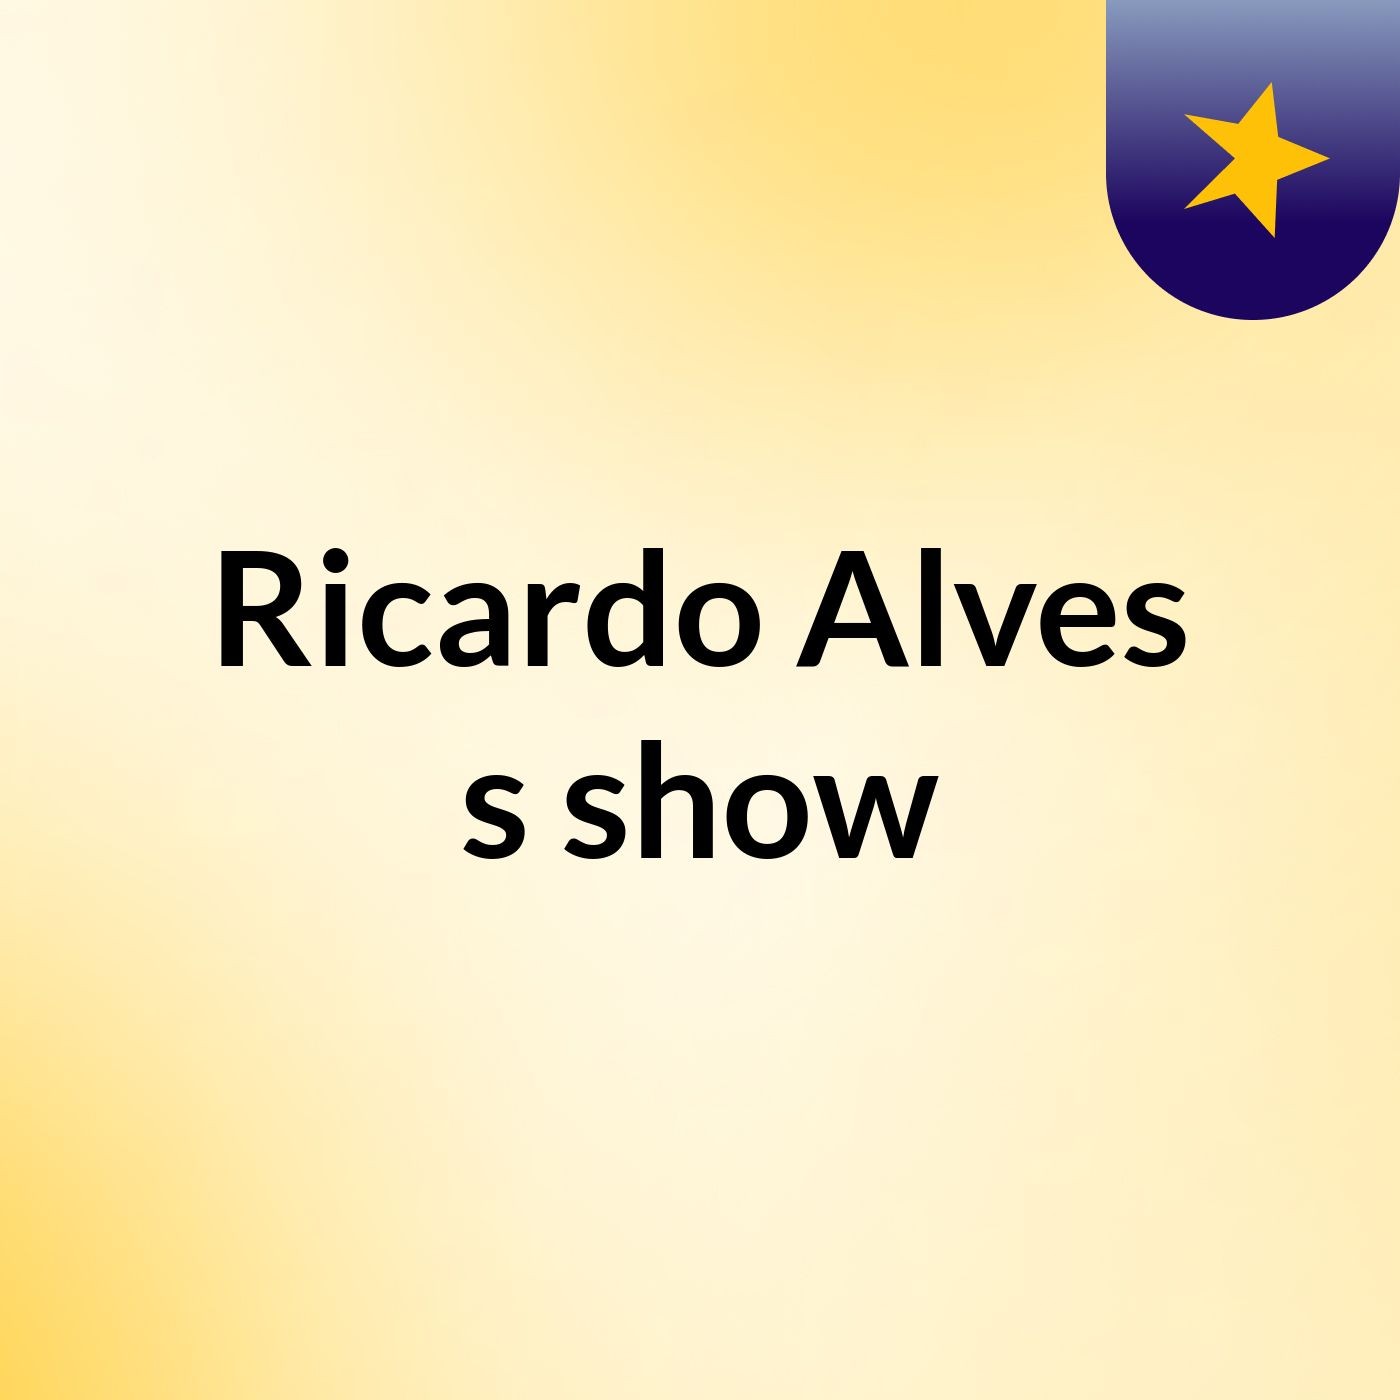 Ricardo Alves's show